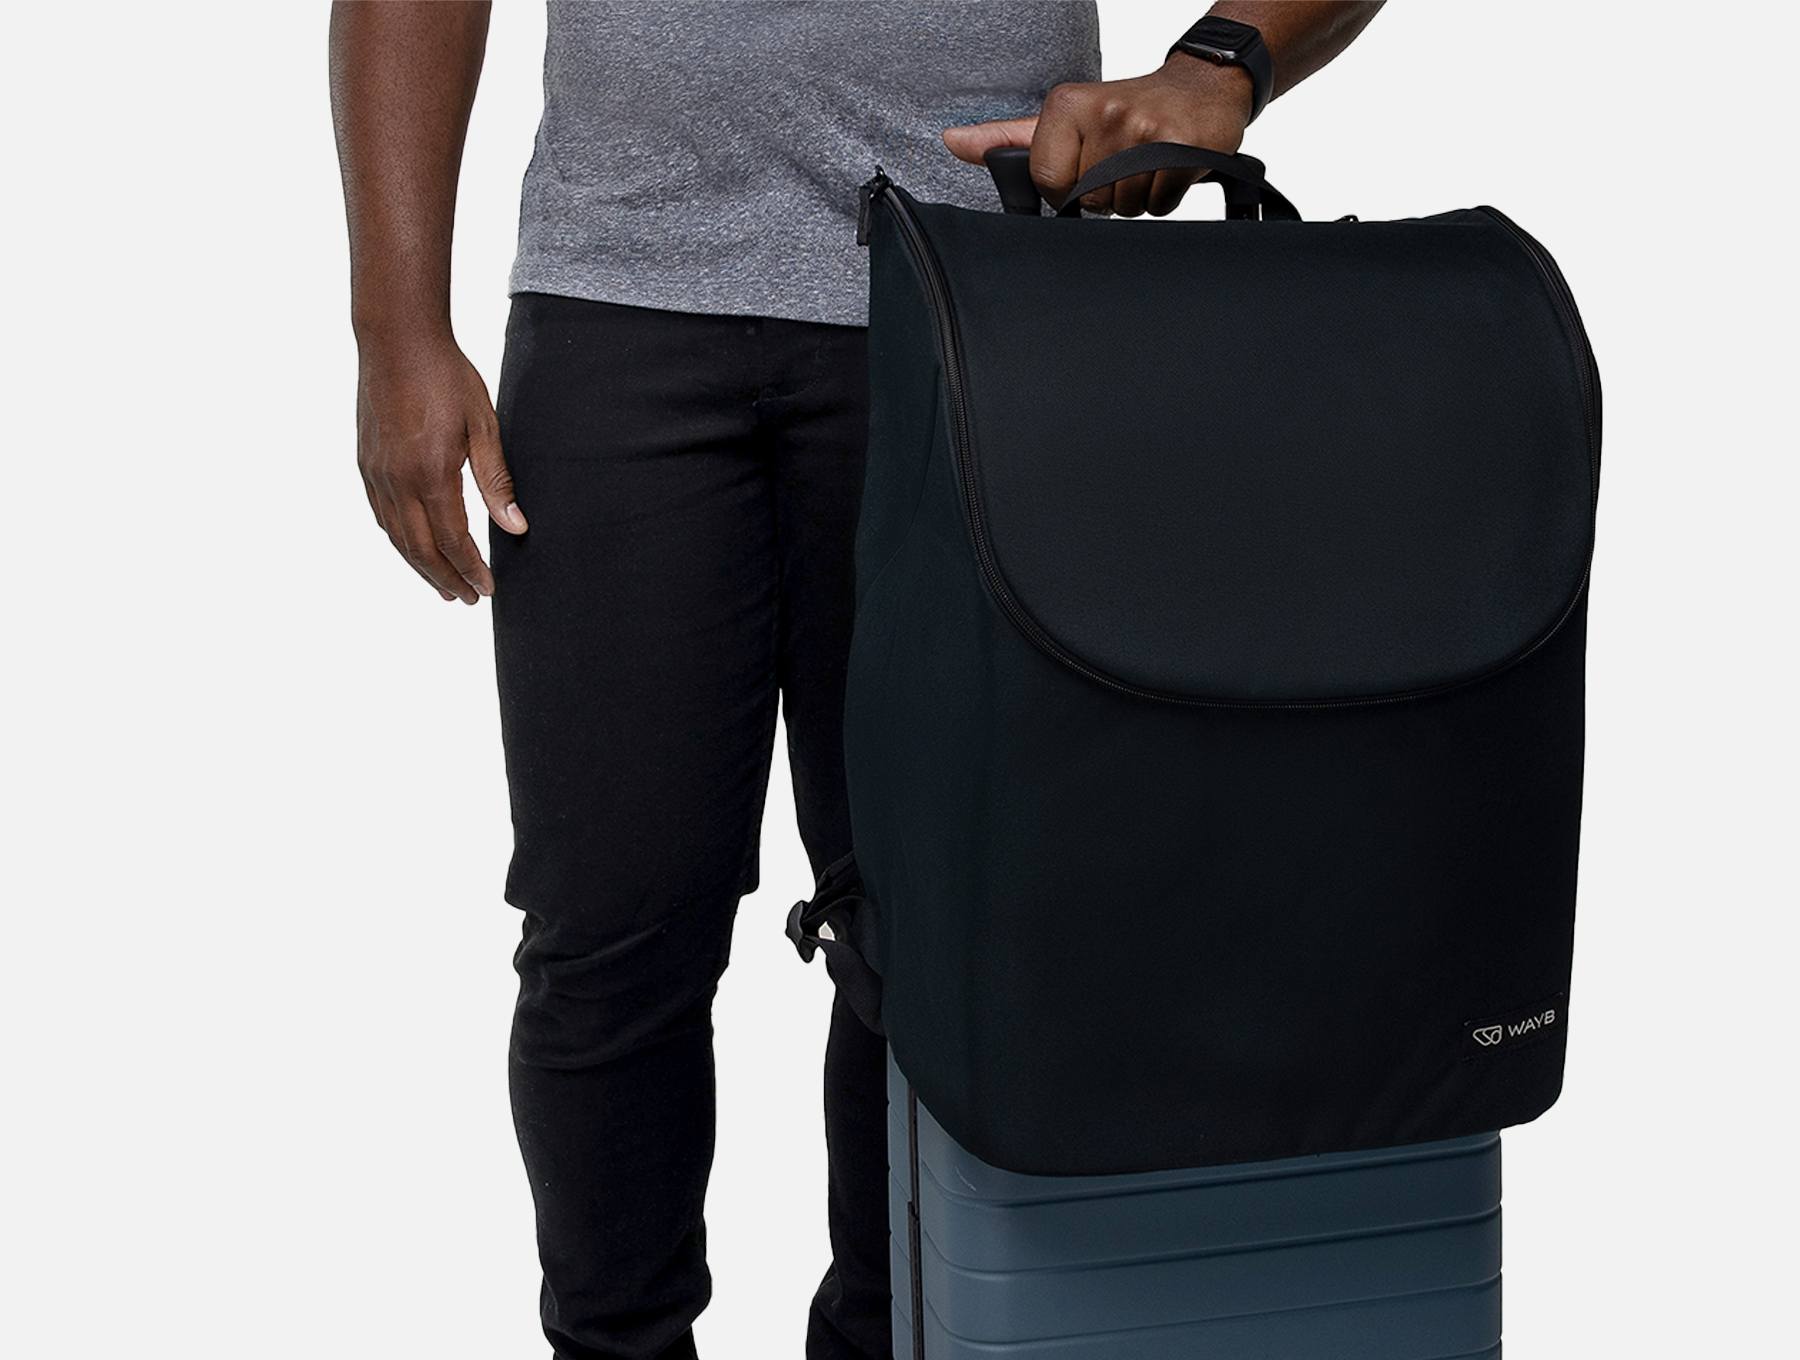 Person - Wayb Pico Forward Facing Travel Car Seat Travel Bag